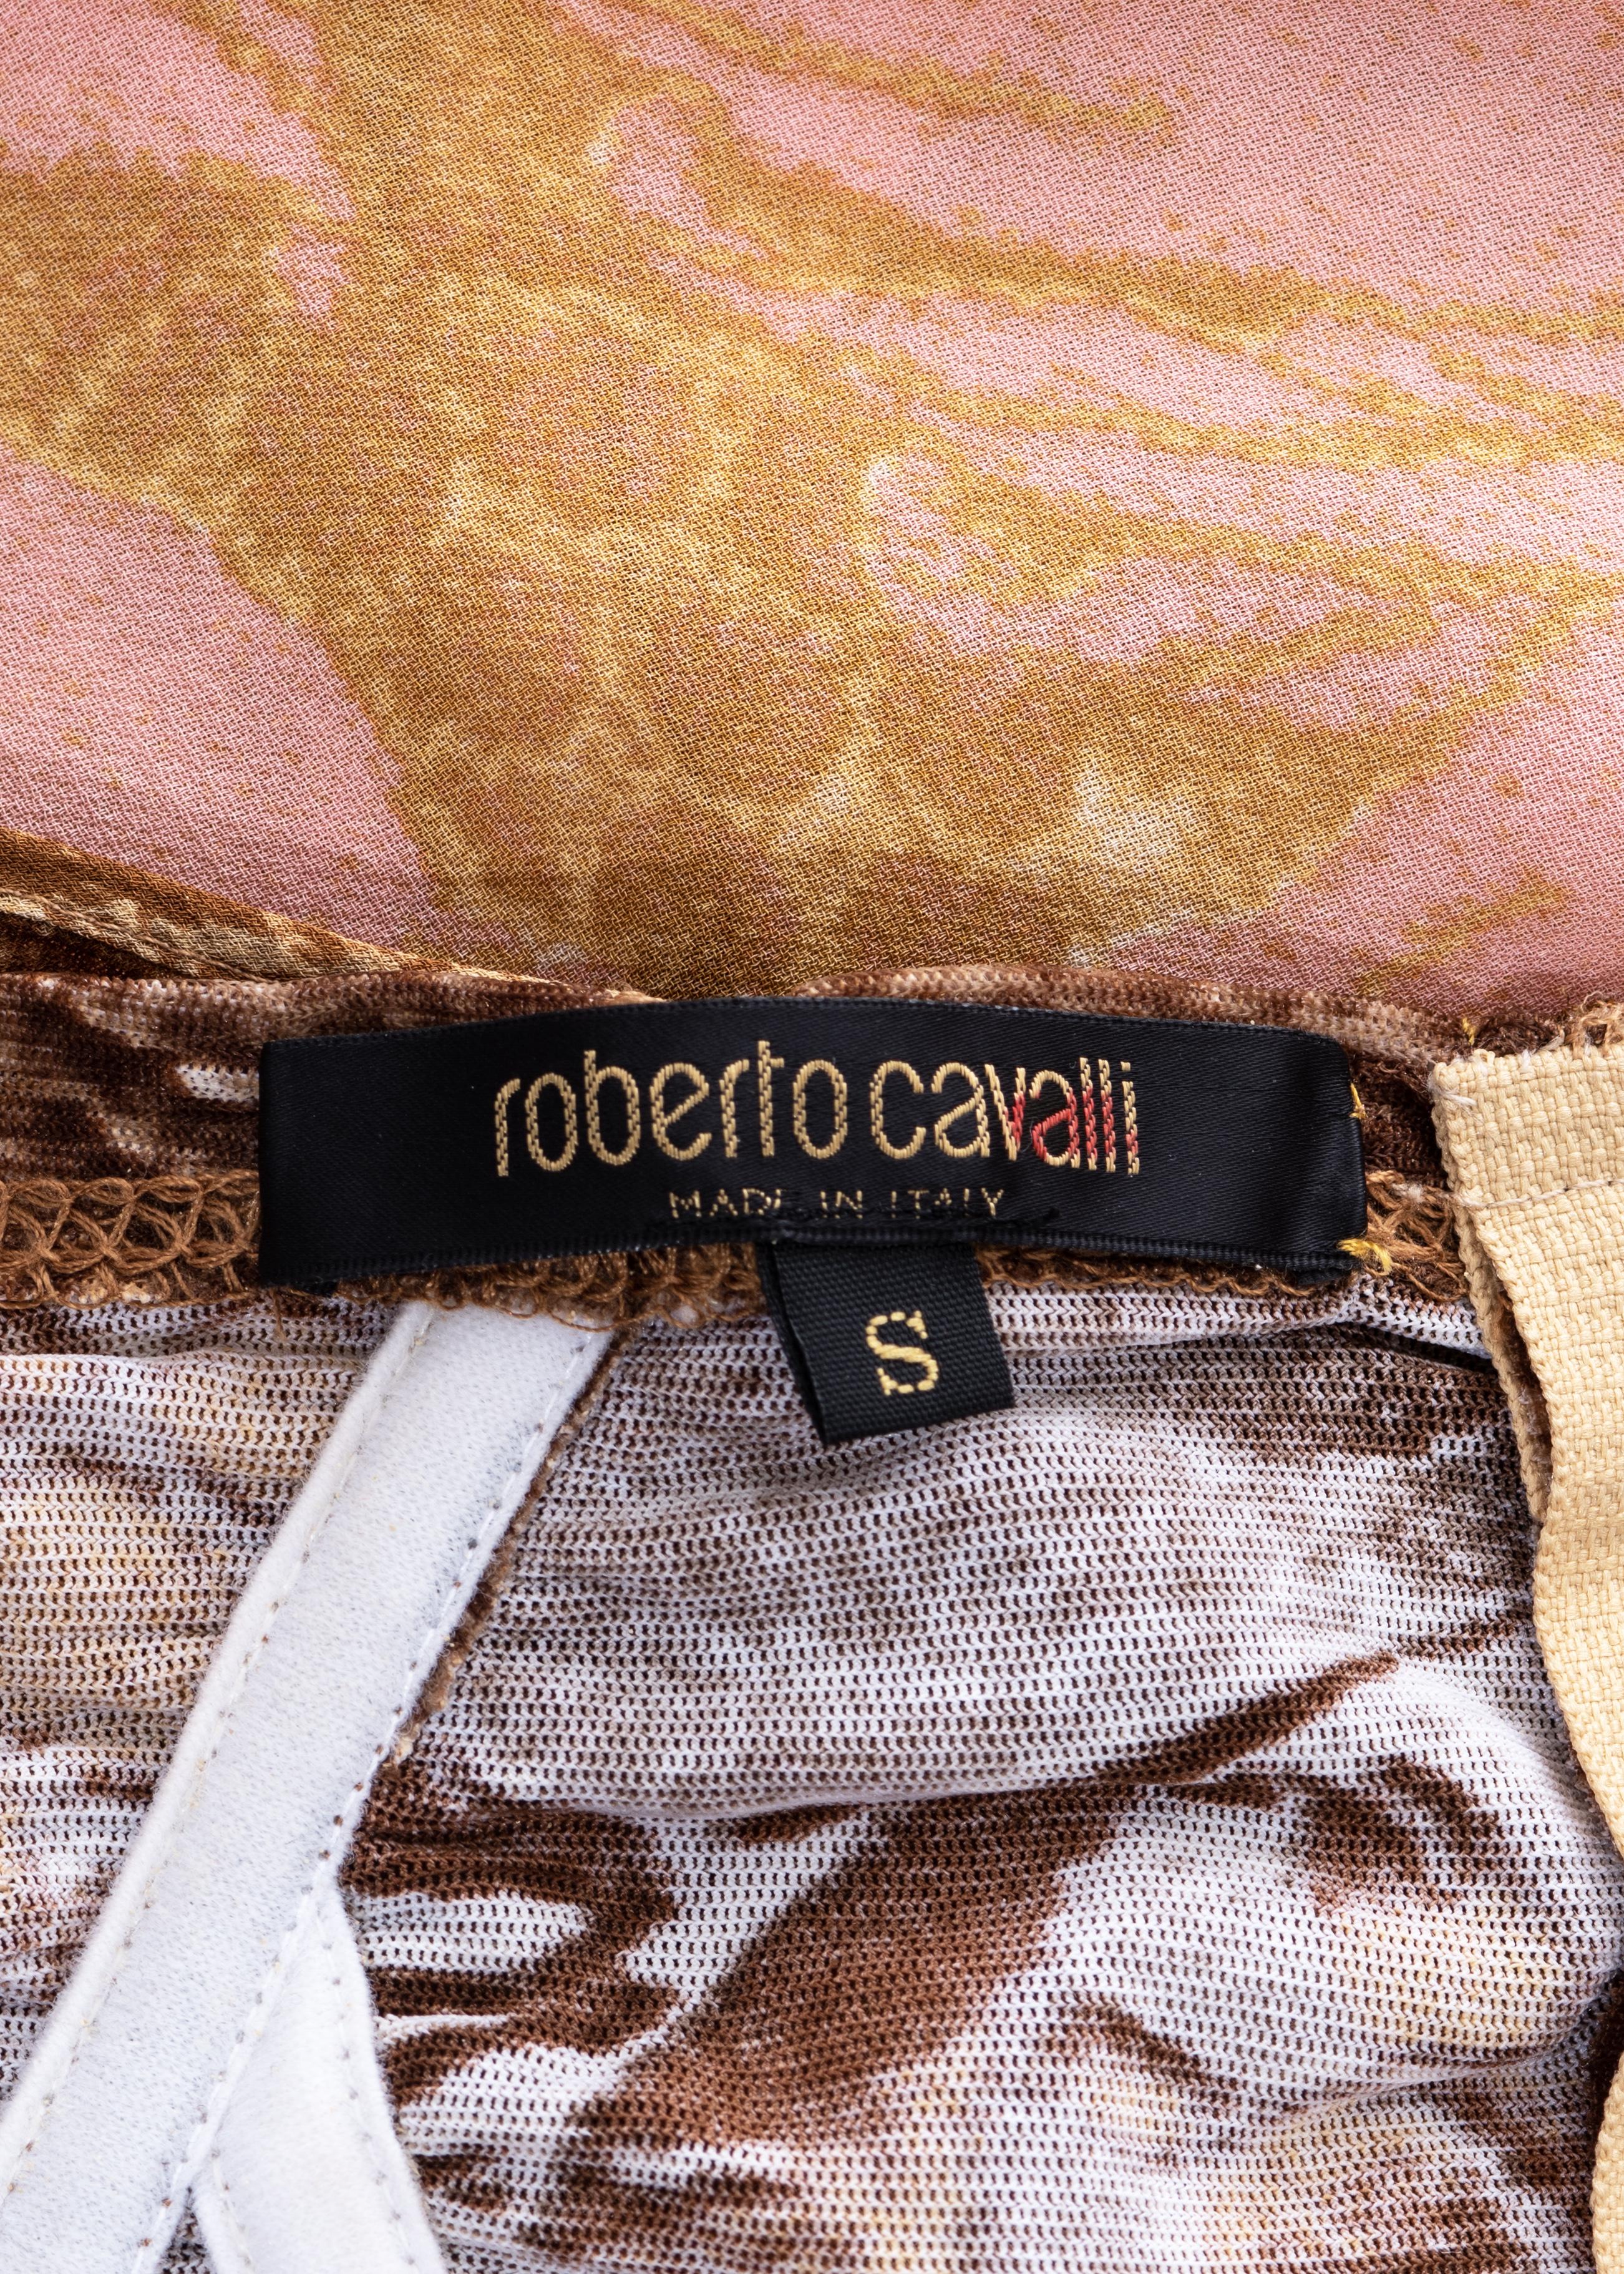 Robe corset en soie à imprimé montage, marron et rose, Roberto Cavalli, fw 2001 5